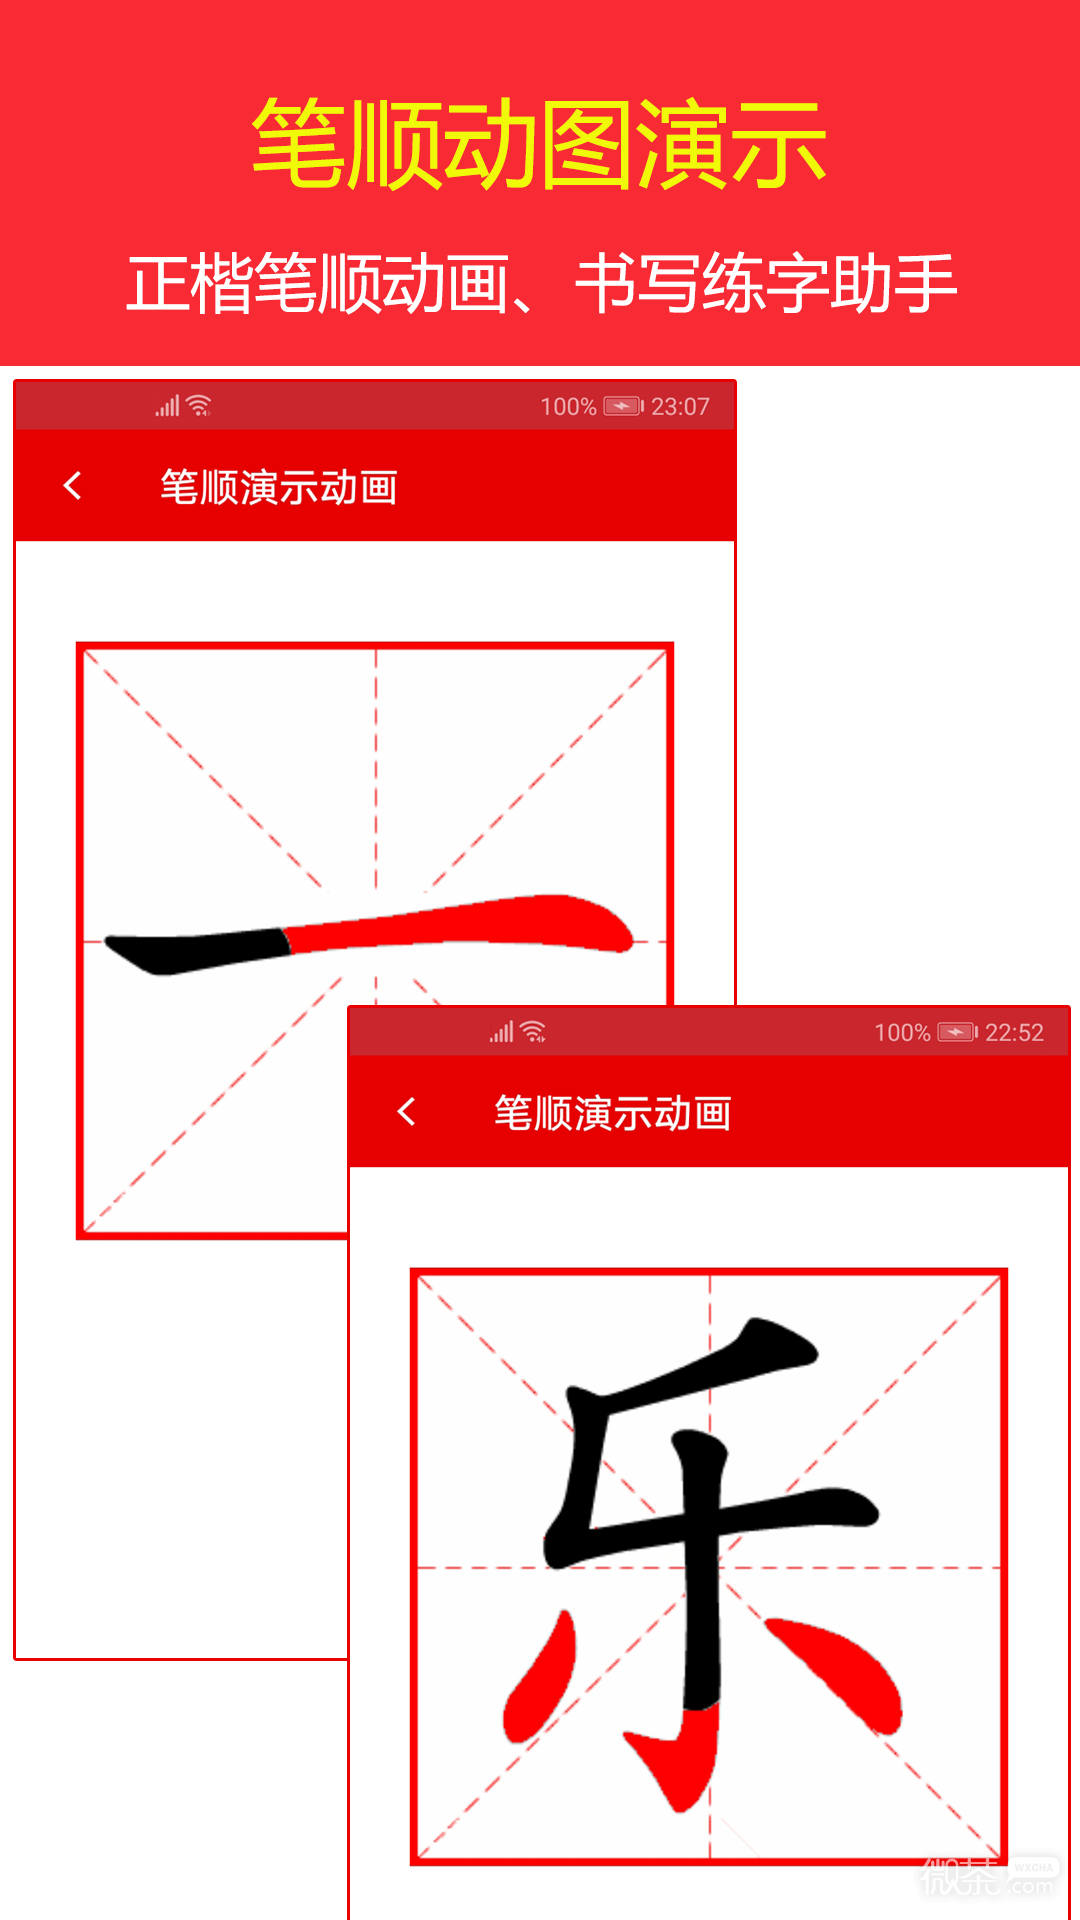 现代汉语字典最新版